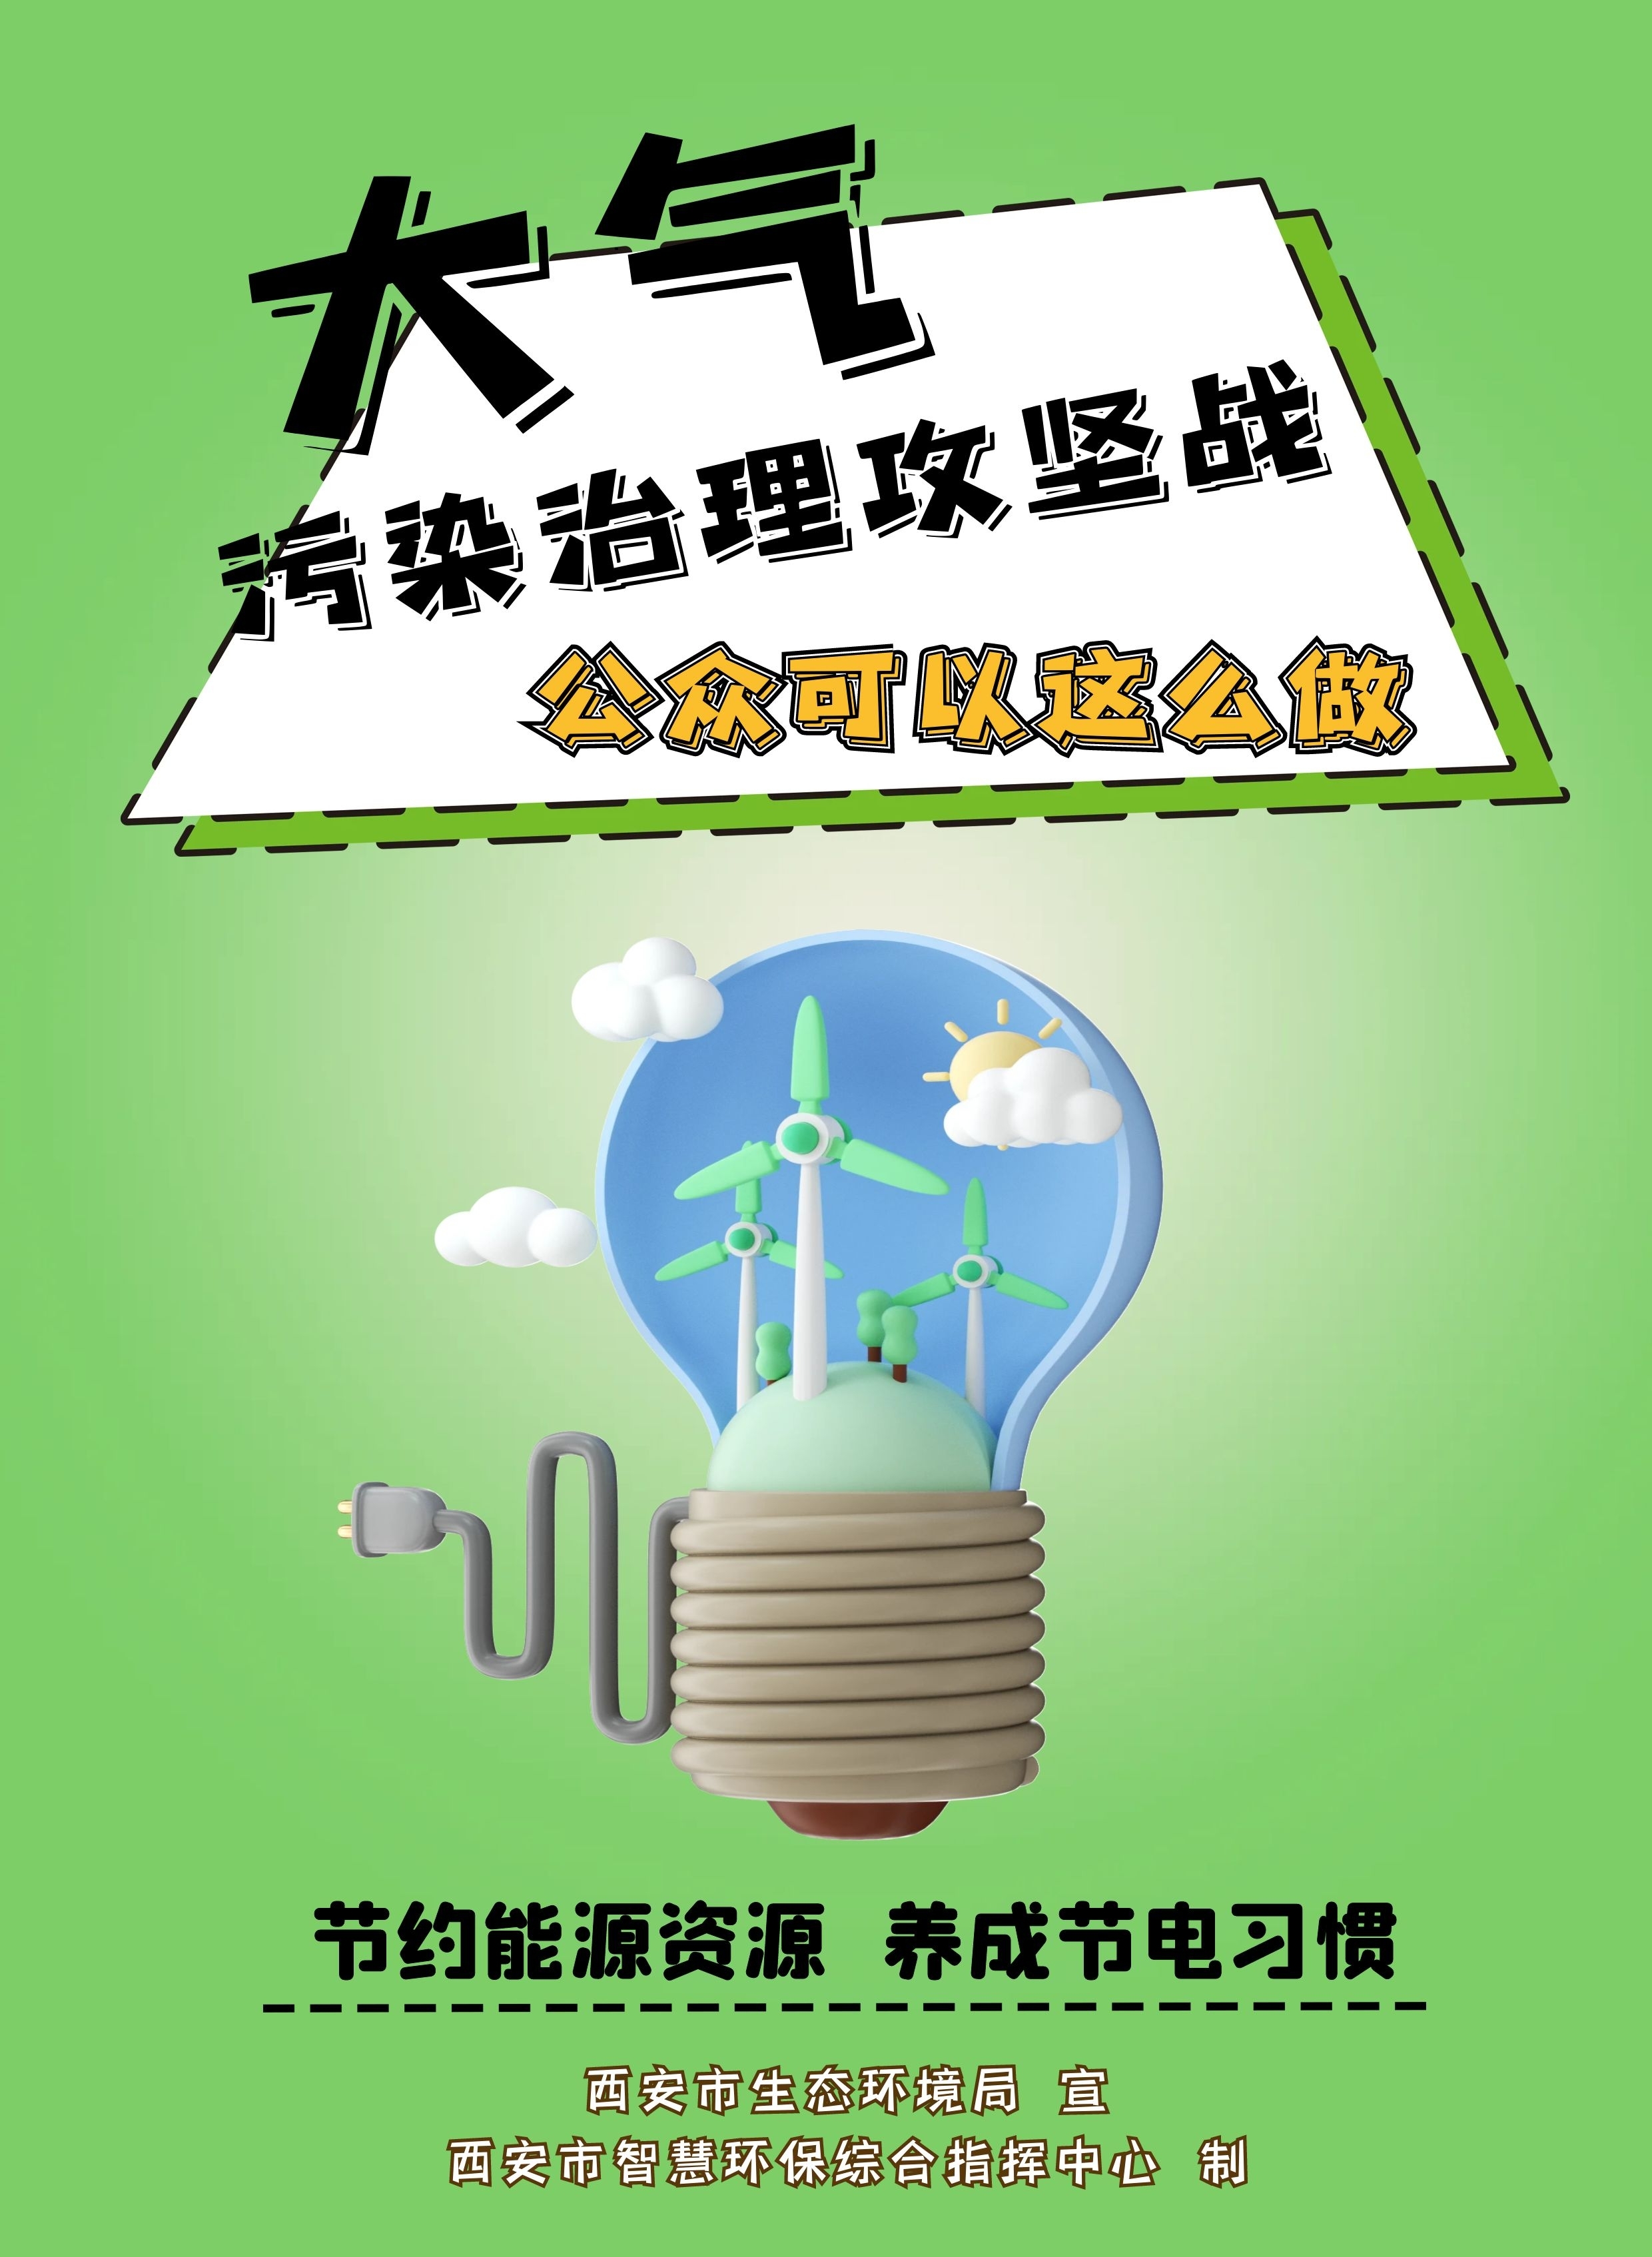 《公民生态环境行为规范十条》的主要内容,关爱生态环境,节约能源资源